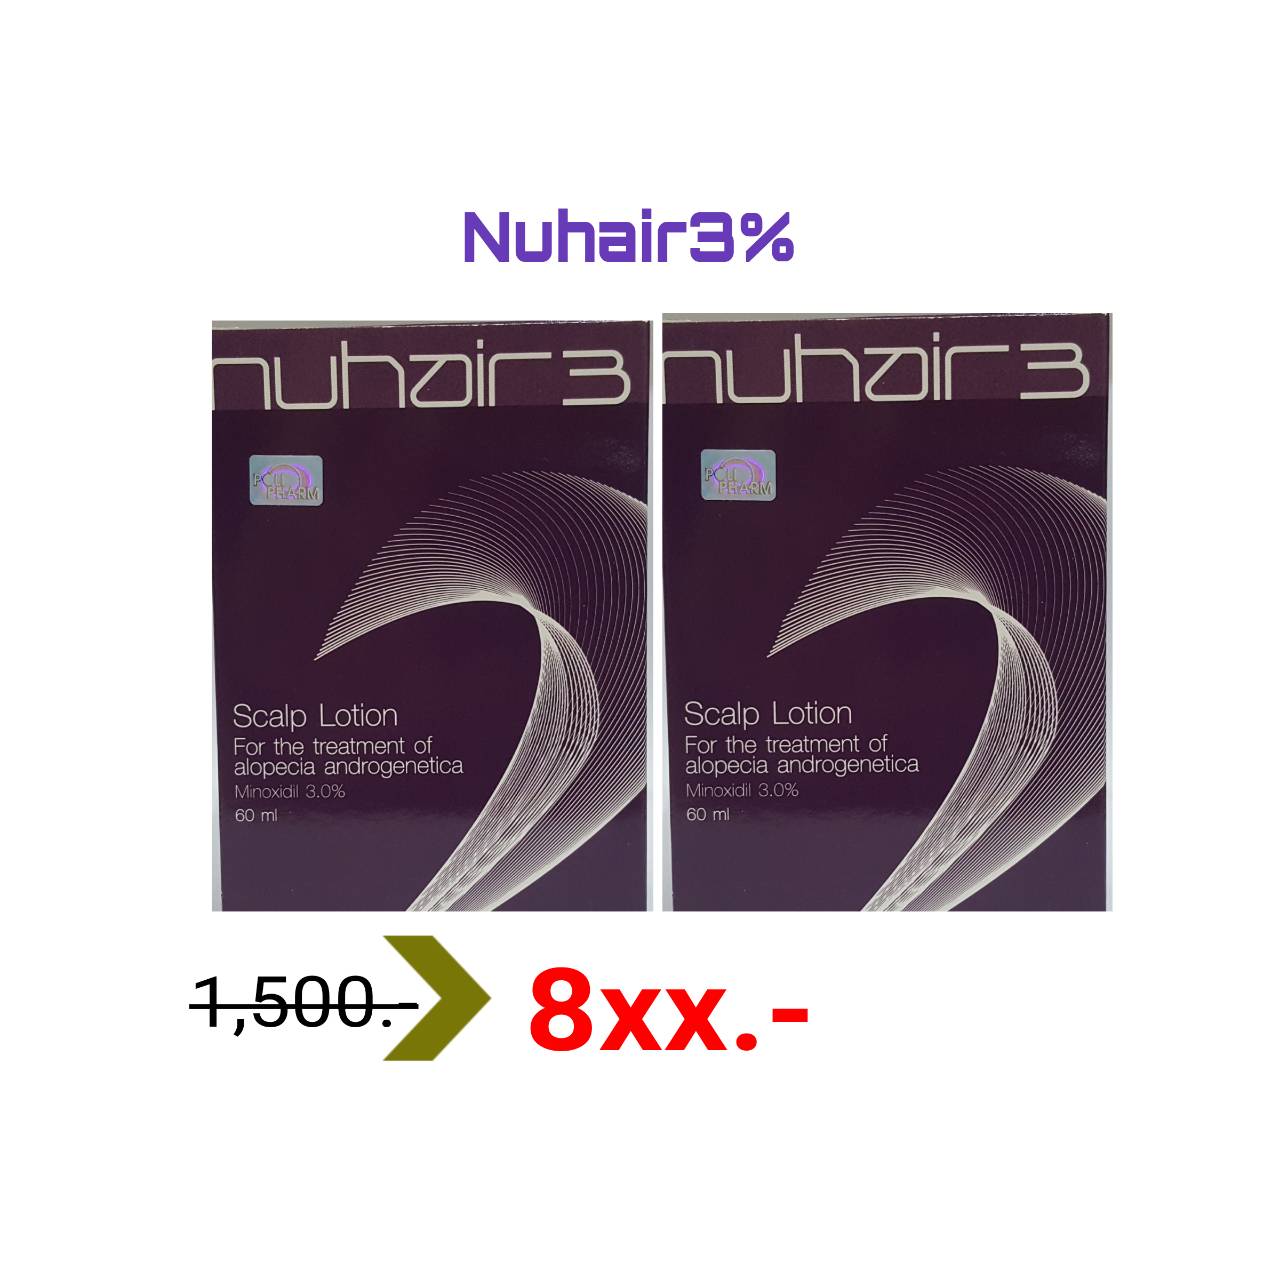 โลชั่น นูแฮร์ 3 Nuhair 3 ขนาด 60 ml  2 กล่อง หมดอายุ 4/11/23